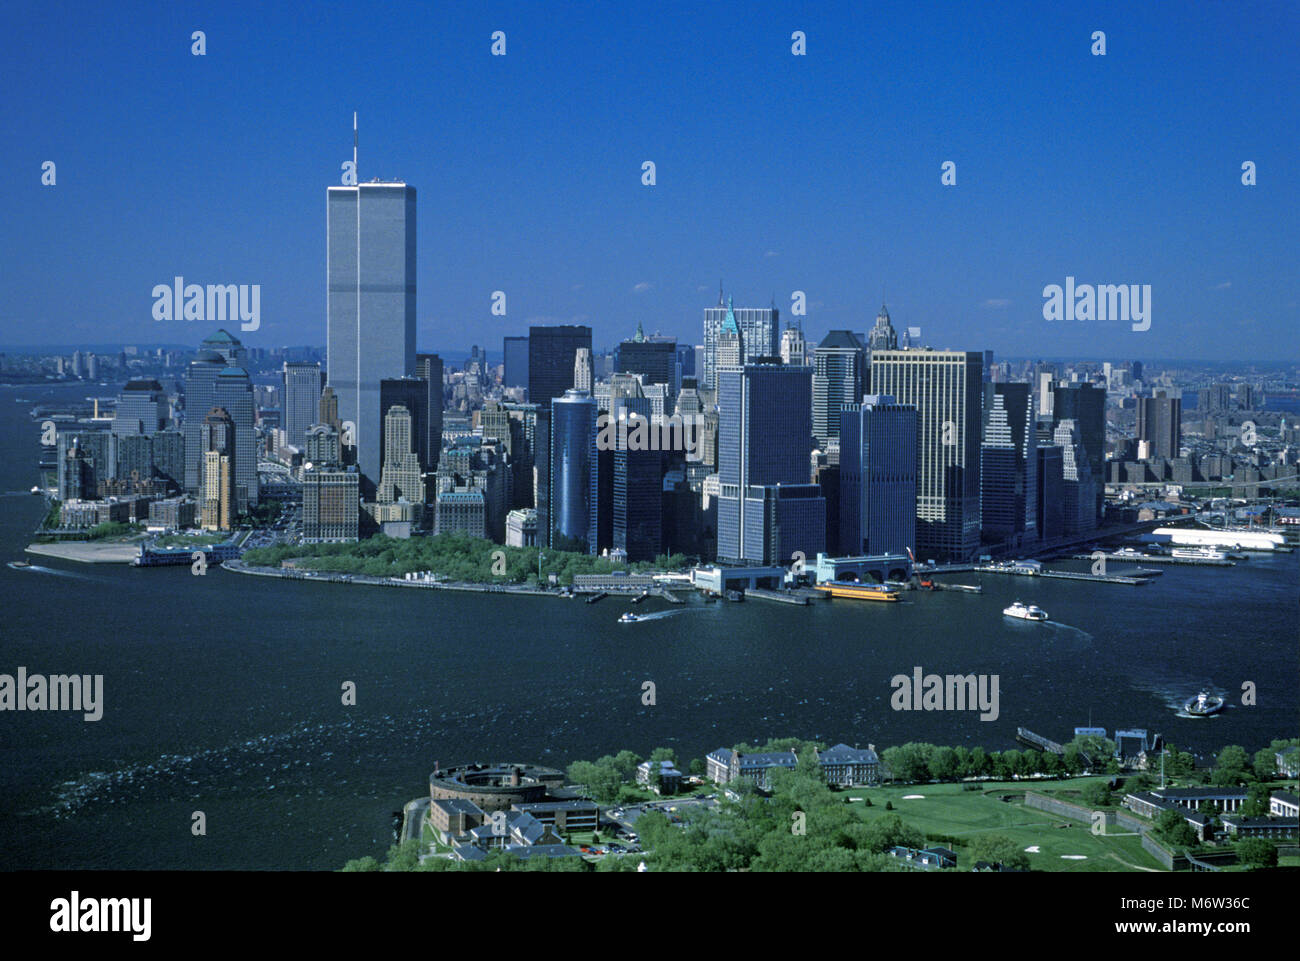 1995 aeree storiche torri gemelle (©MINORU YAMASAKI 1973) skyline del centro della Baia di Hudson MANHATTAN NEW YORK CITY USA Foto Stock